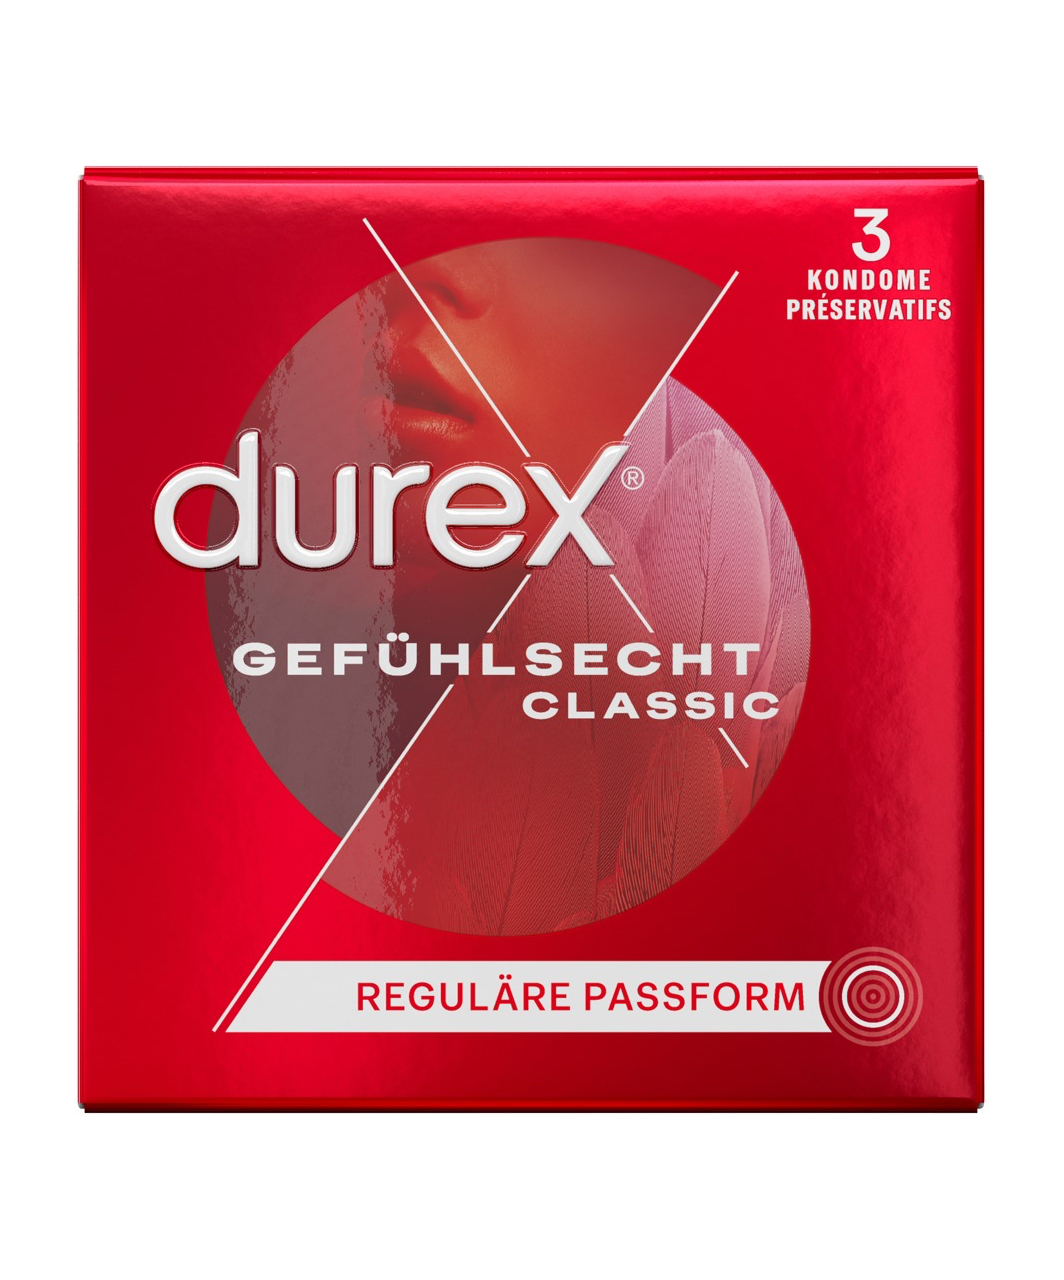 Durex Sensitive prezervatīvi (3 / 20 gab.)